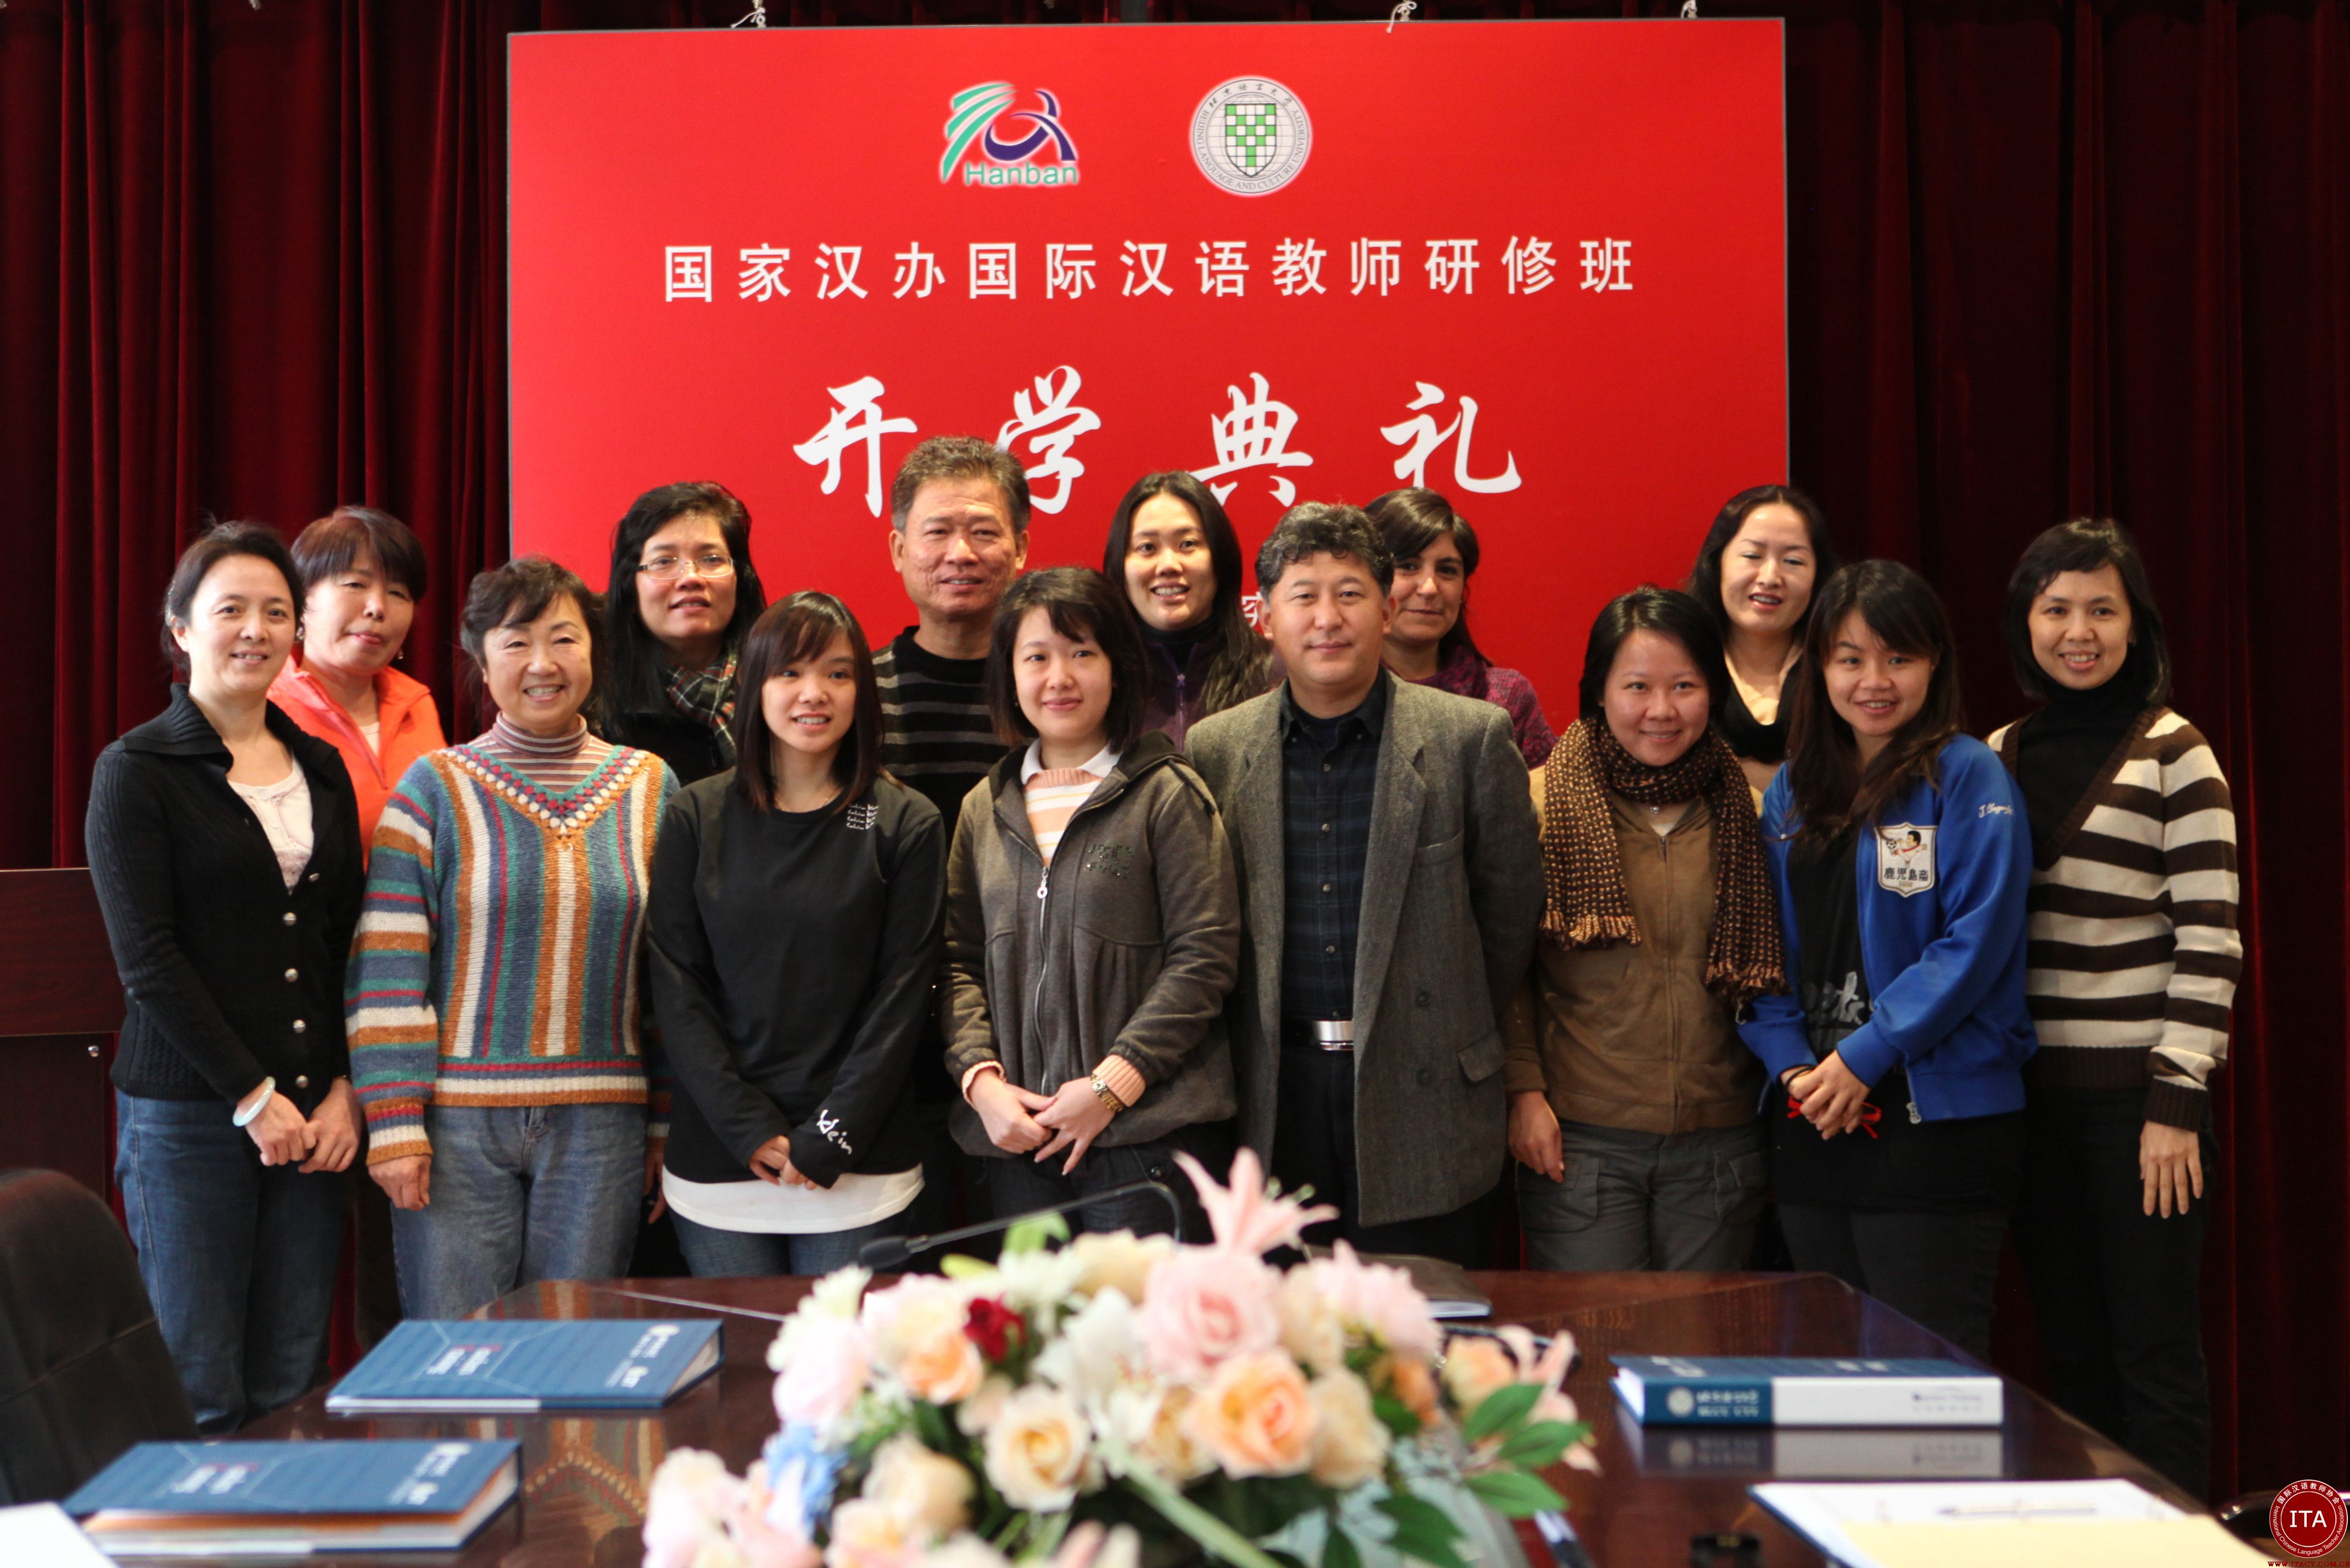 国家汉办专家组赴印度国际大学举办汉语教师培训